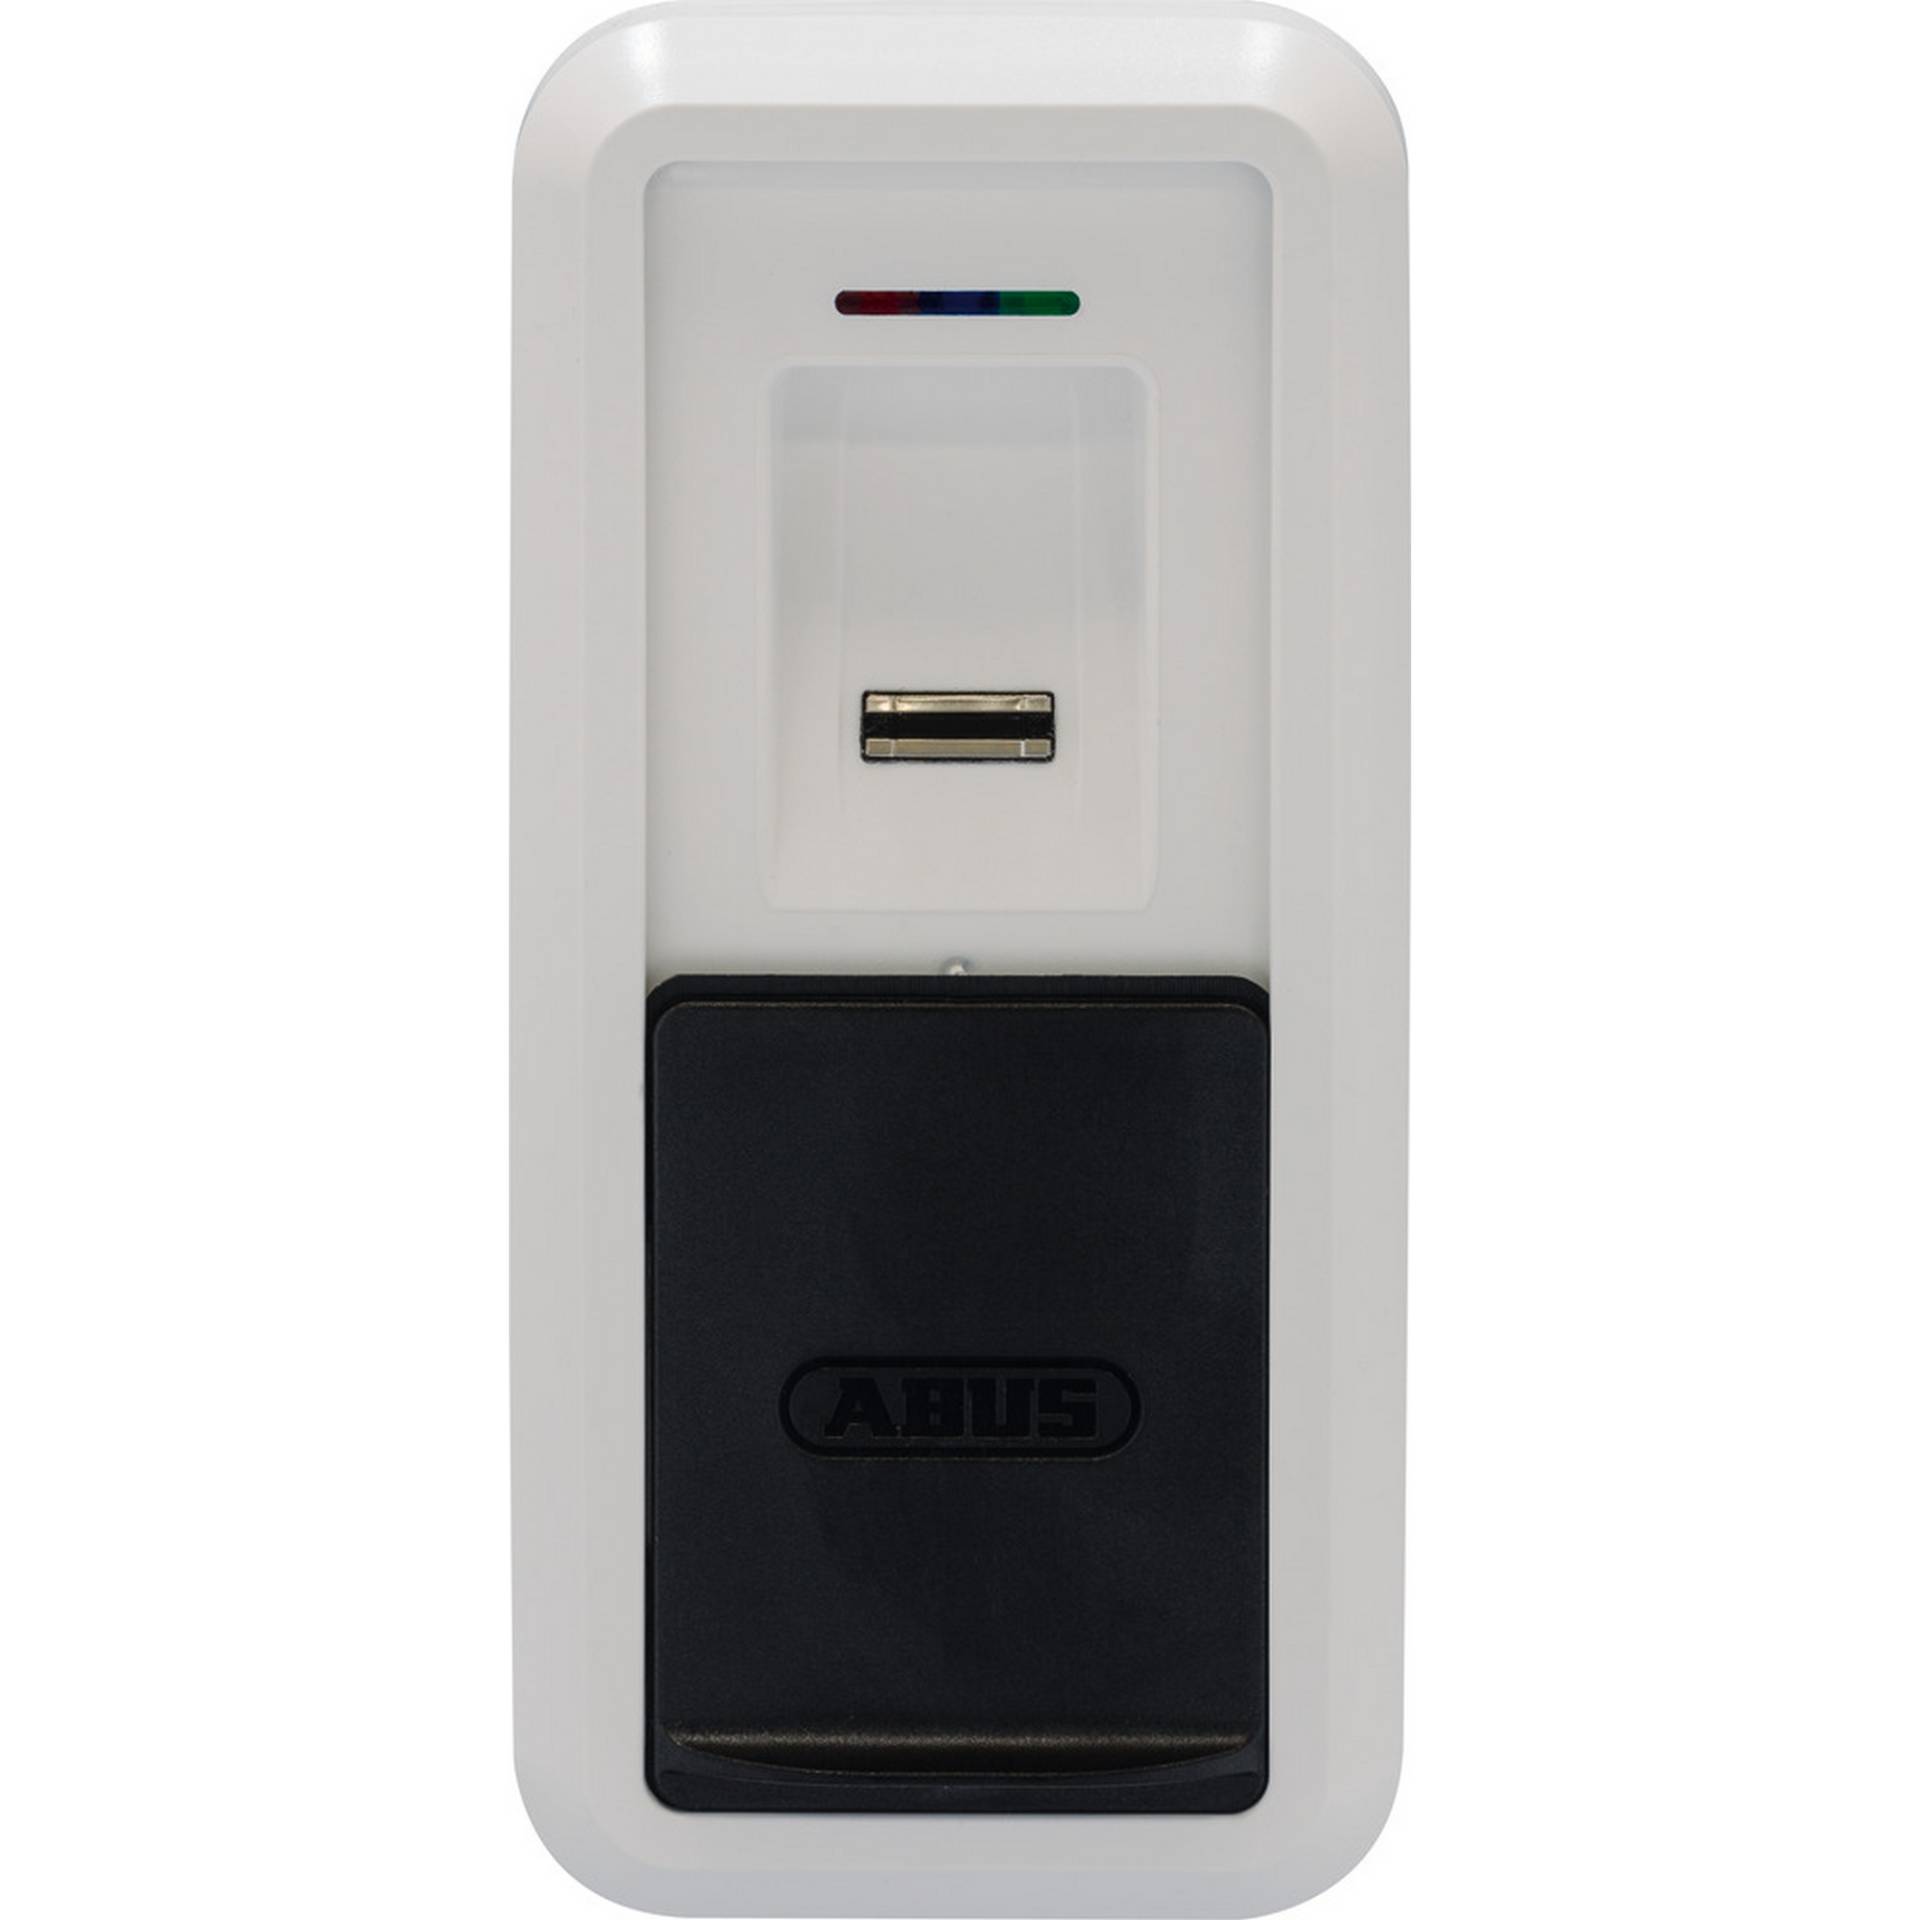 ABUS Fingerscanner 'CFS3100 W' HomeTec Pro Bluetooth von Abus